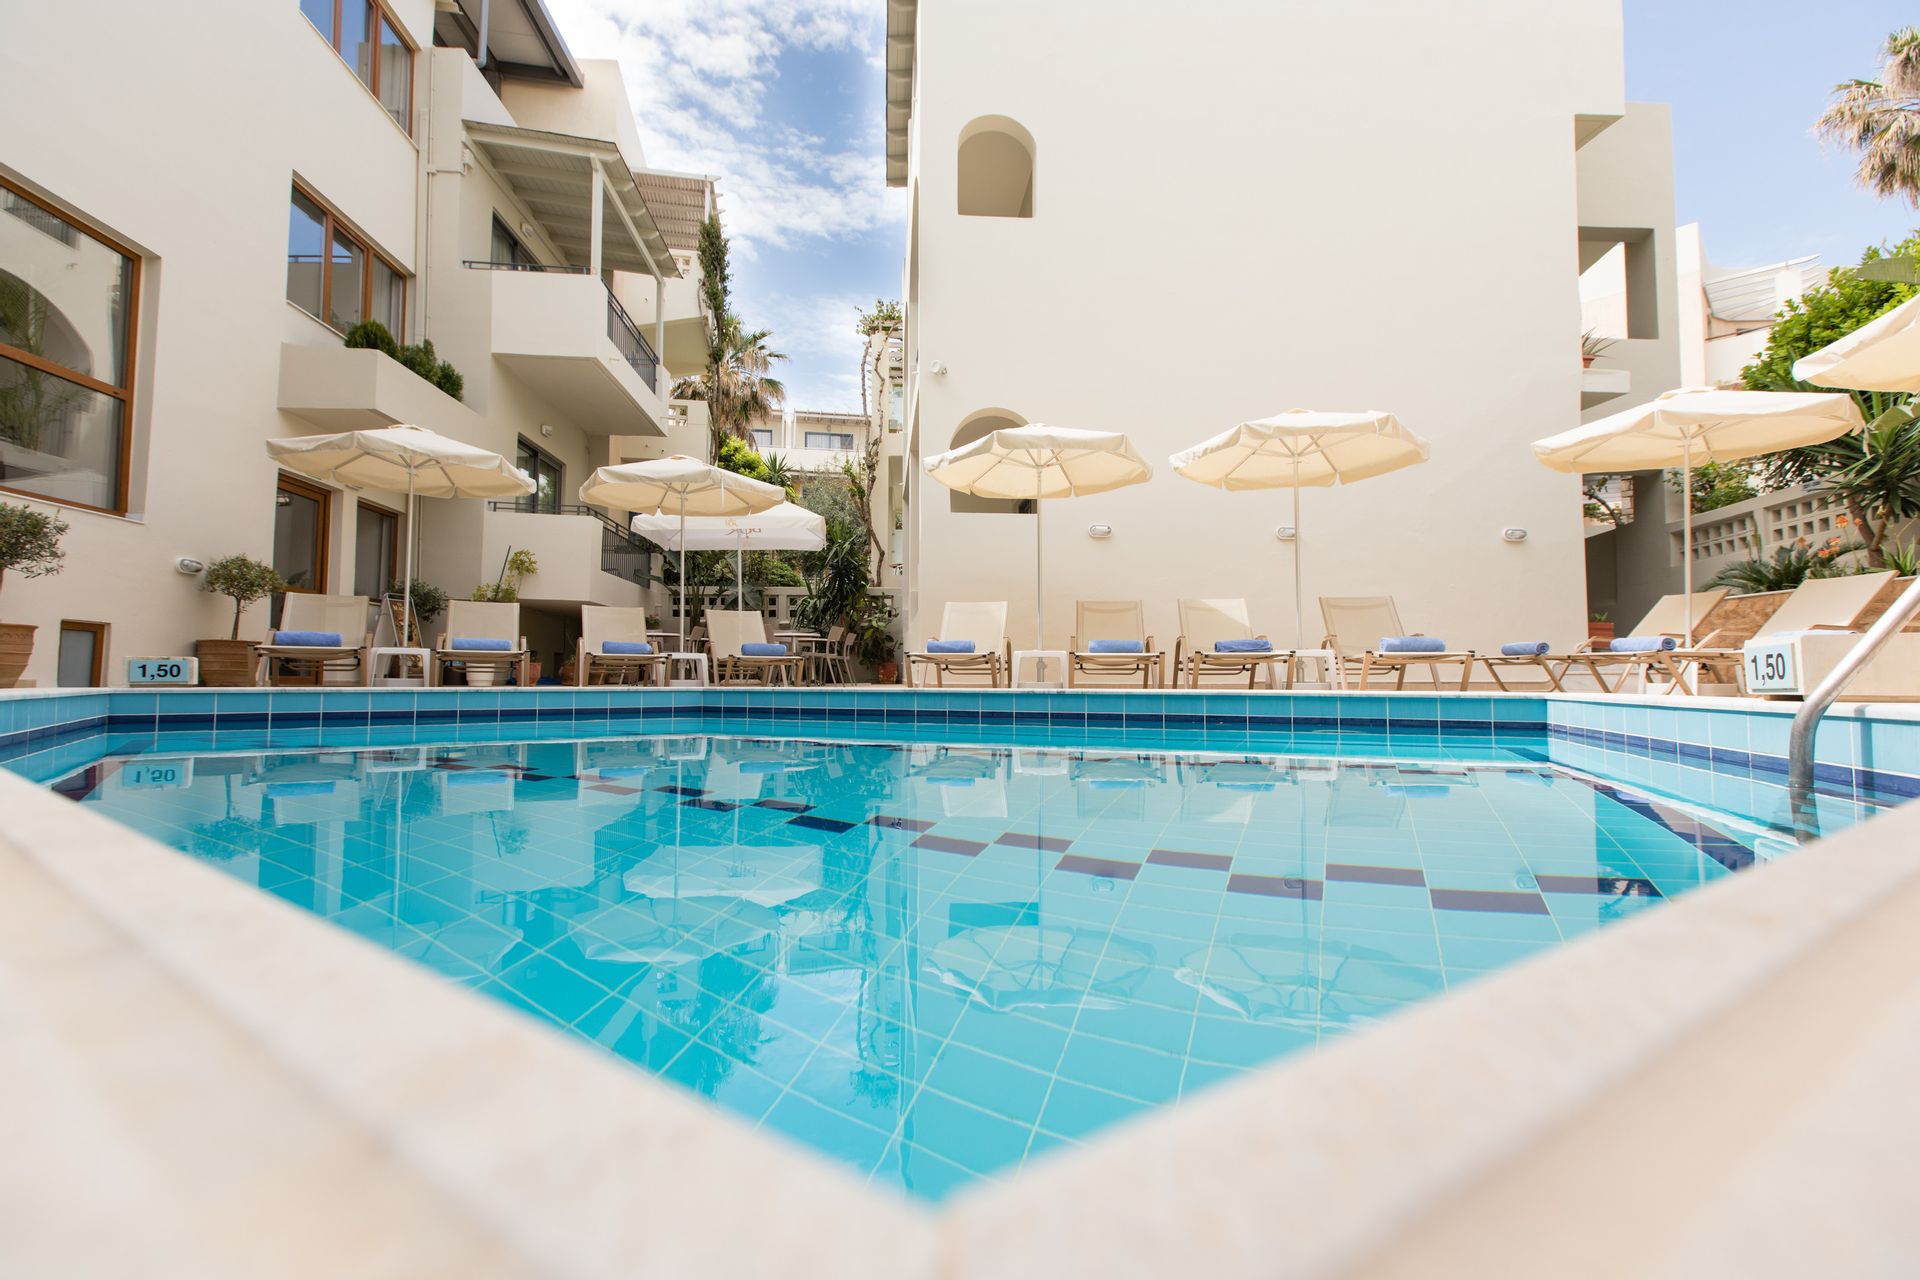 Anita Beach Hotel - Ρέθυμνο, Κρήτη ✦ 2 Ημέρες (1 Διανυκτέρευση)